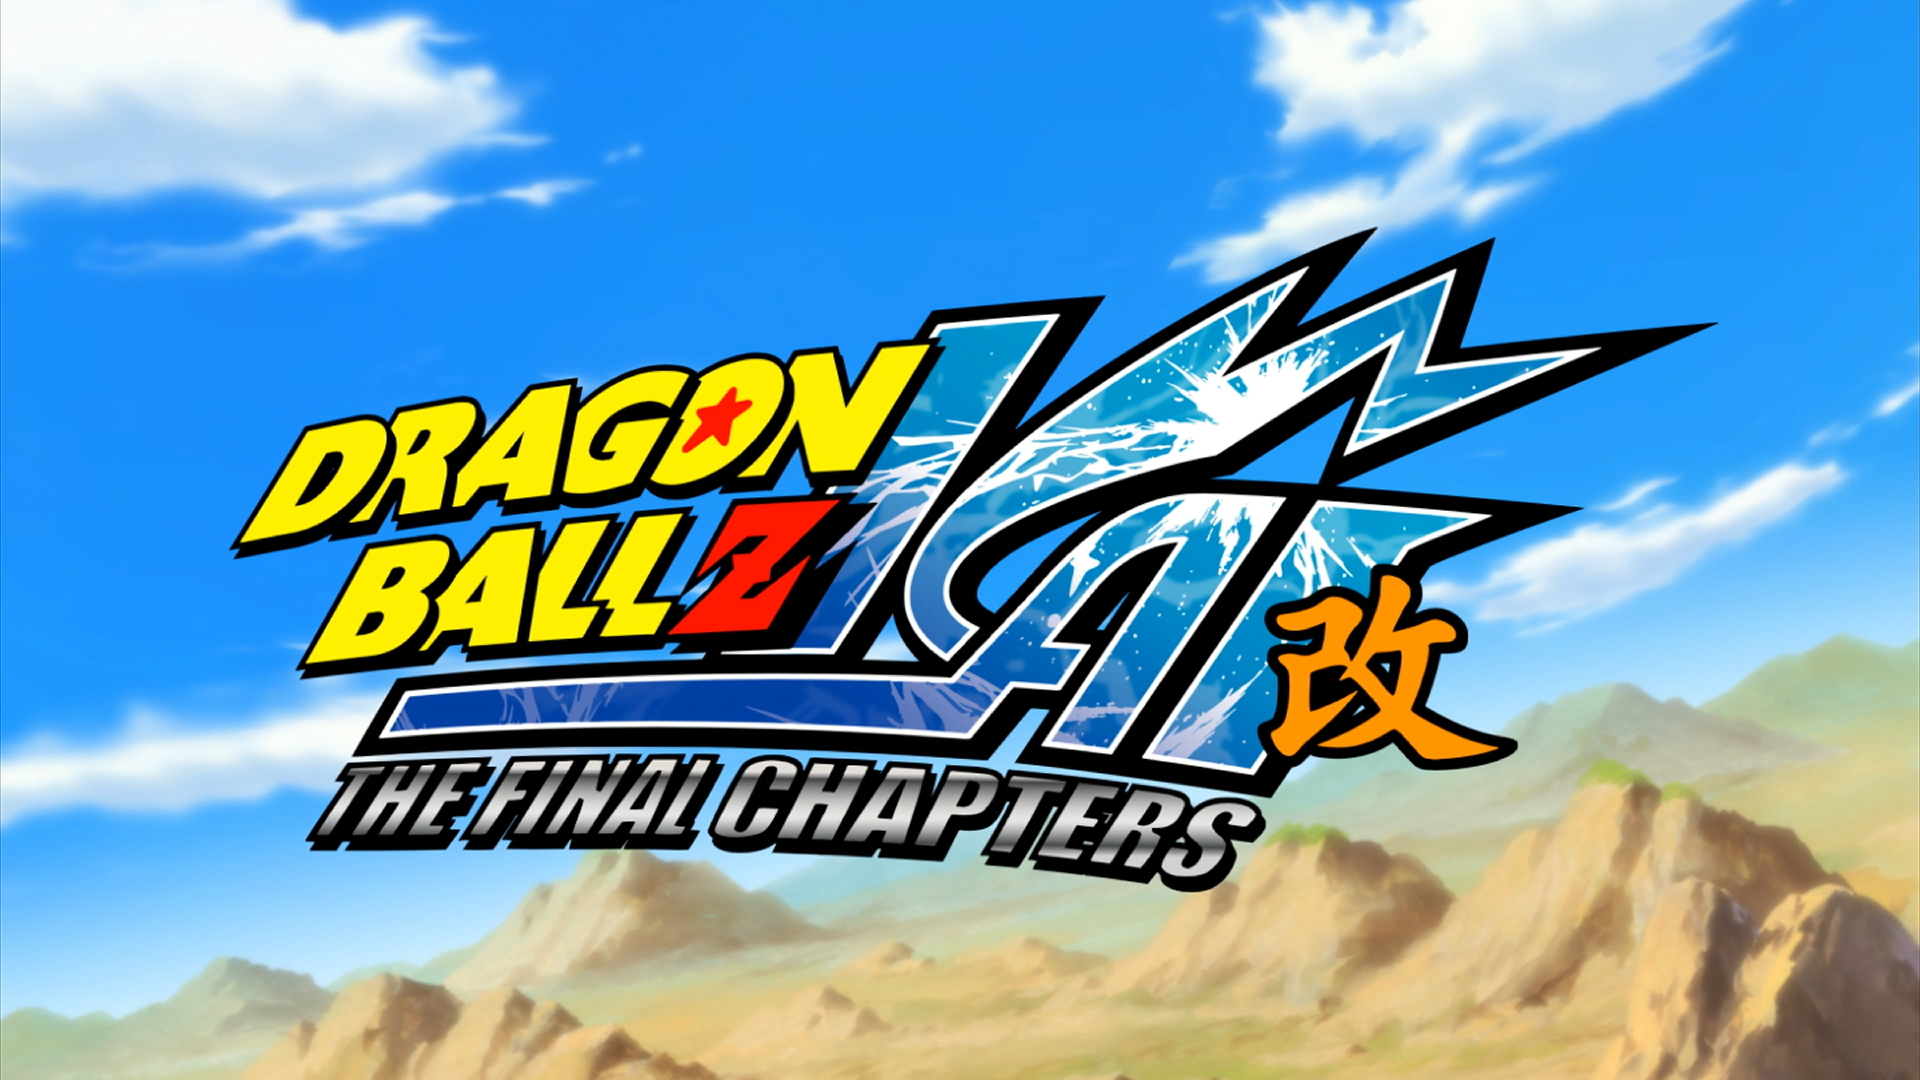 Dragon Ball Z Kai Anime Premium POSTER MADE IN USA - ANI043